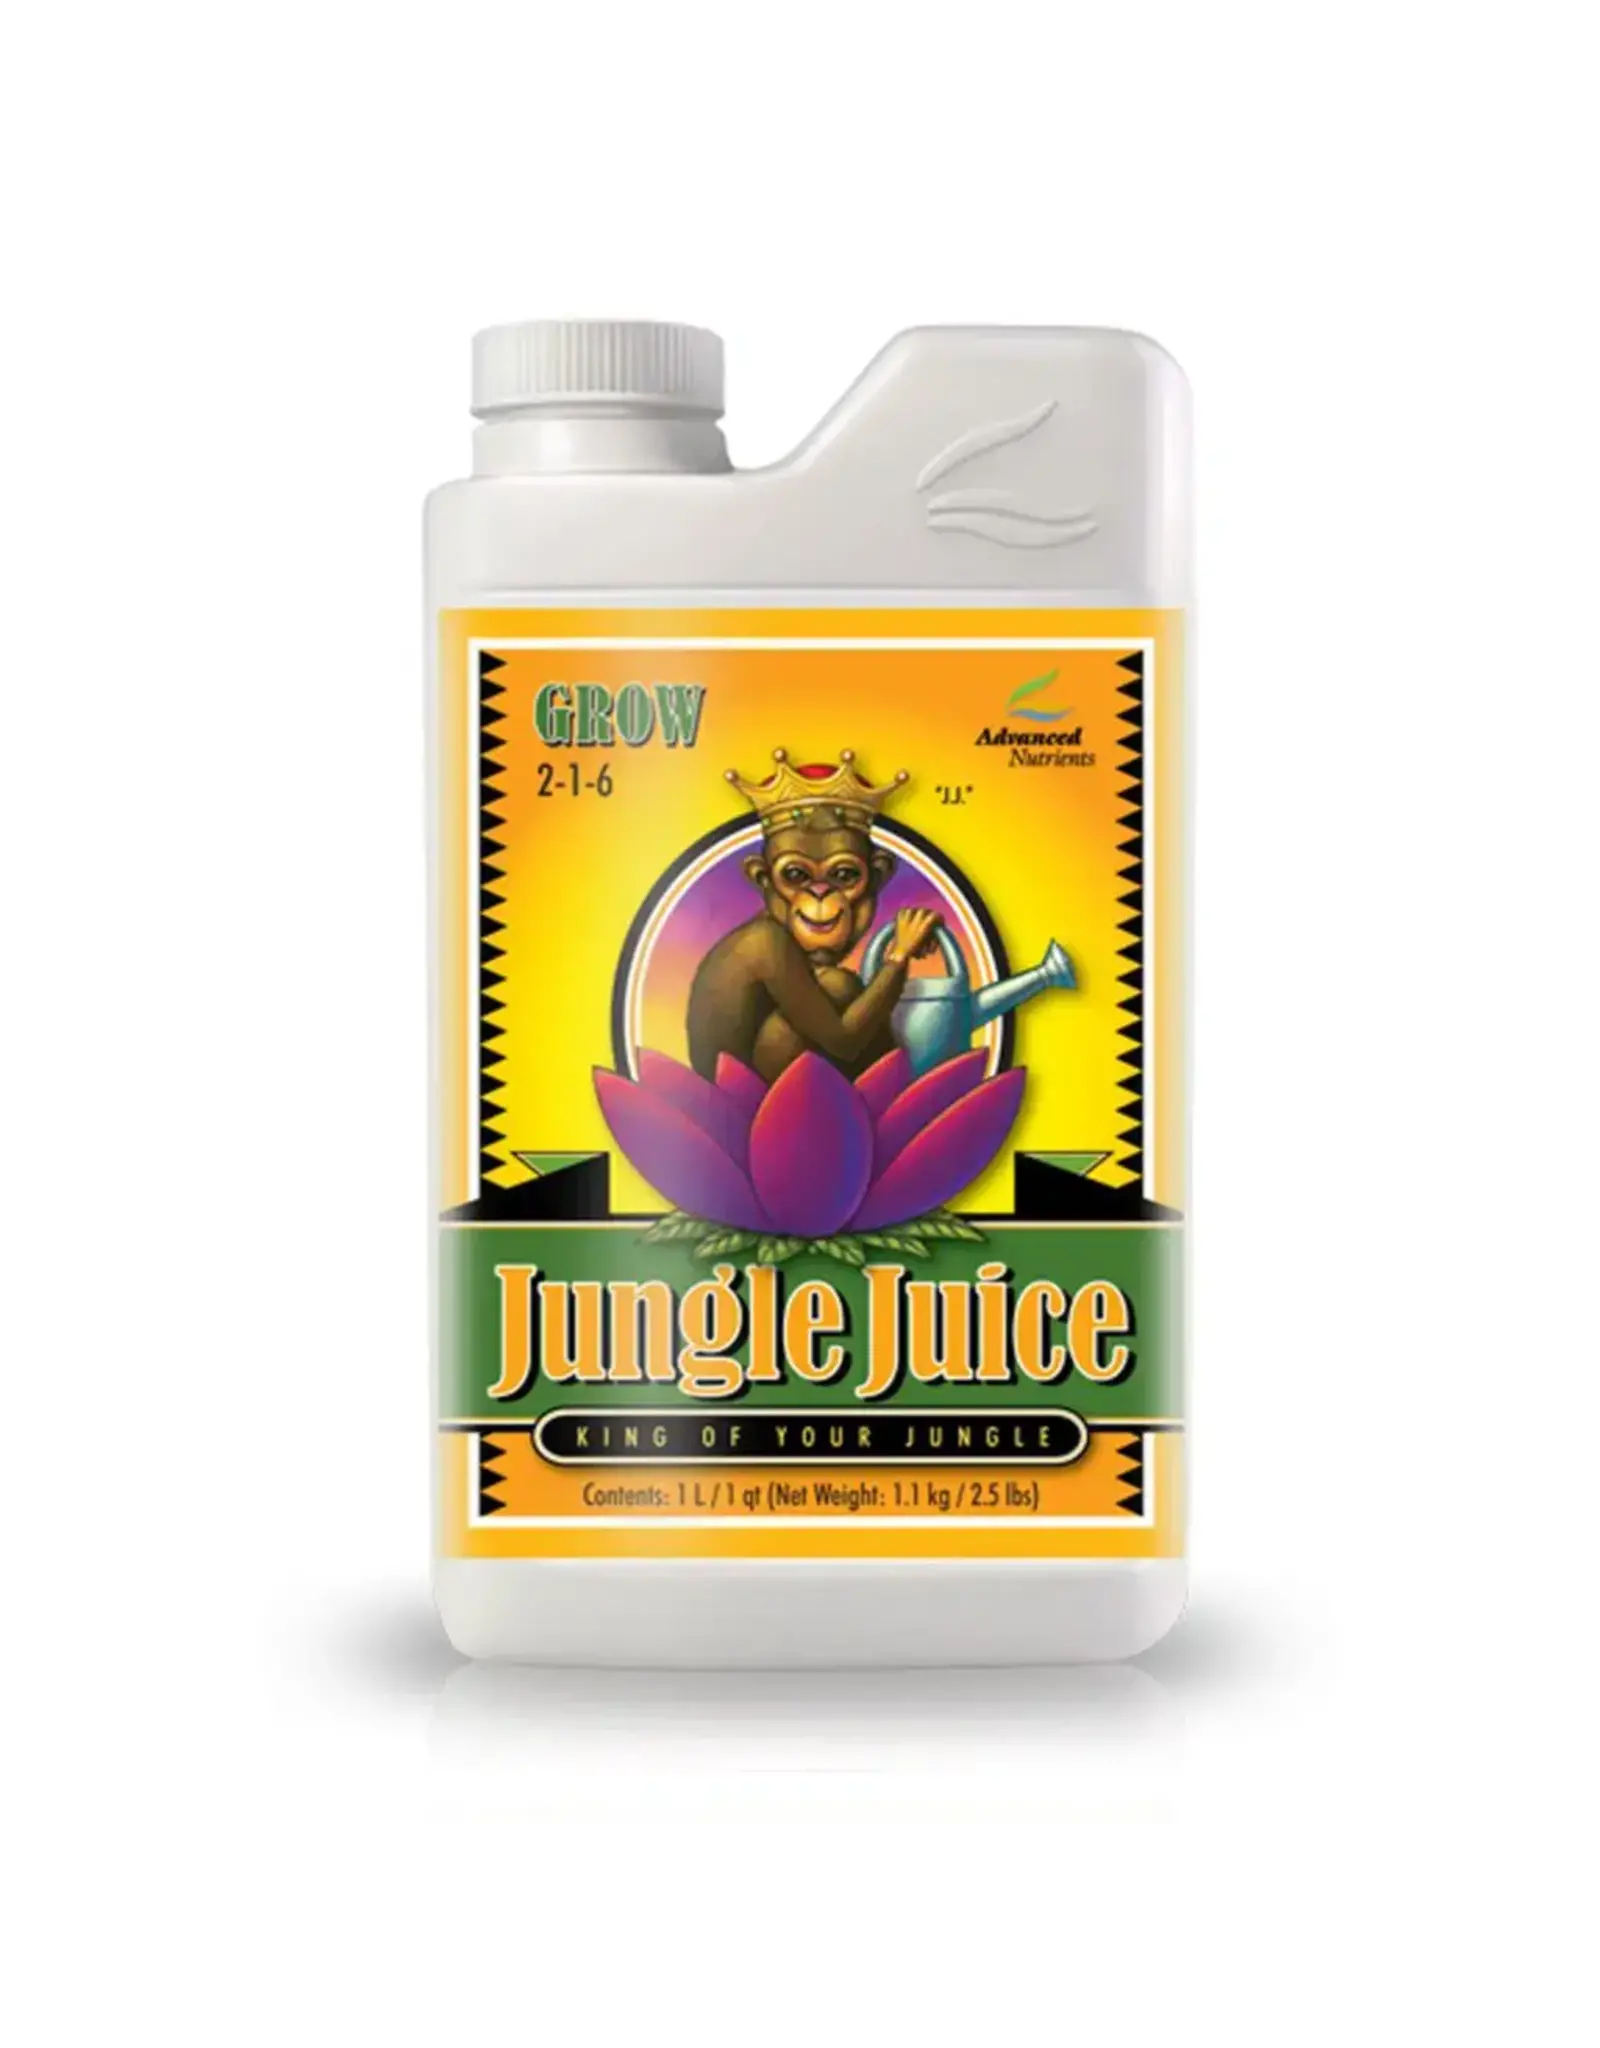 Advanced Nutrients Advanced Nutrients Jungle Juice Grow qt FS